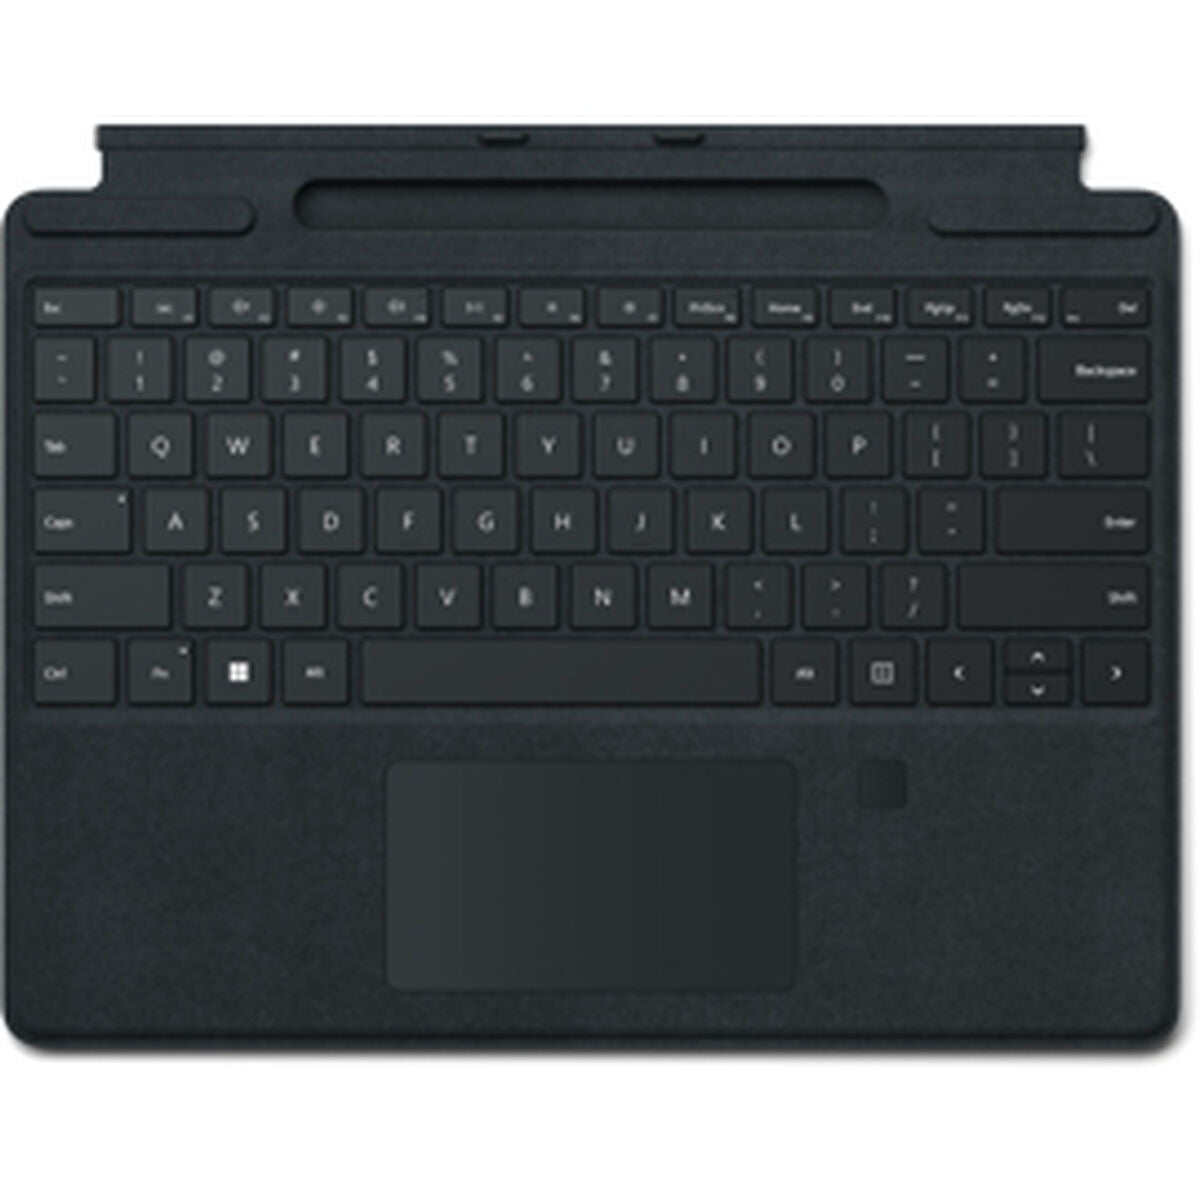 Bluetooth-Tastatur mit Ständer für Microsoft Tablet 8XG-00012, spanisches Qwerty